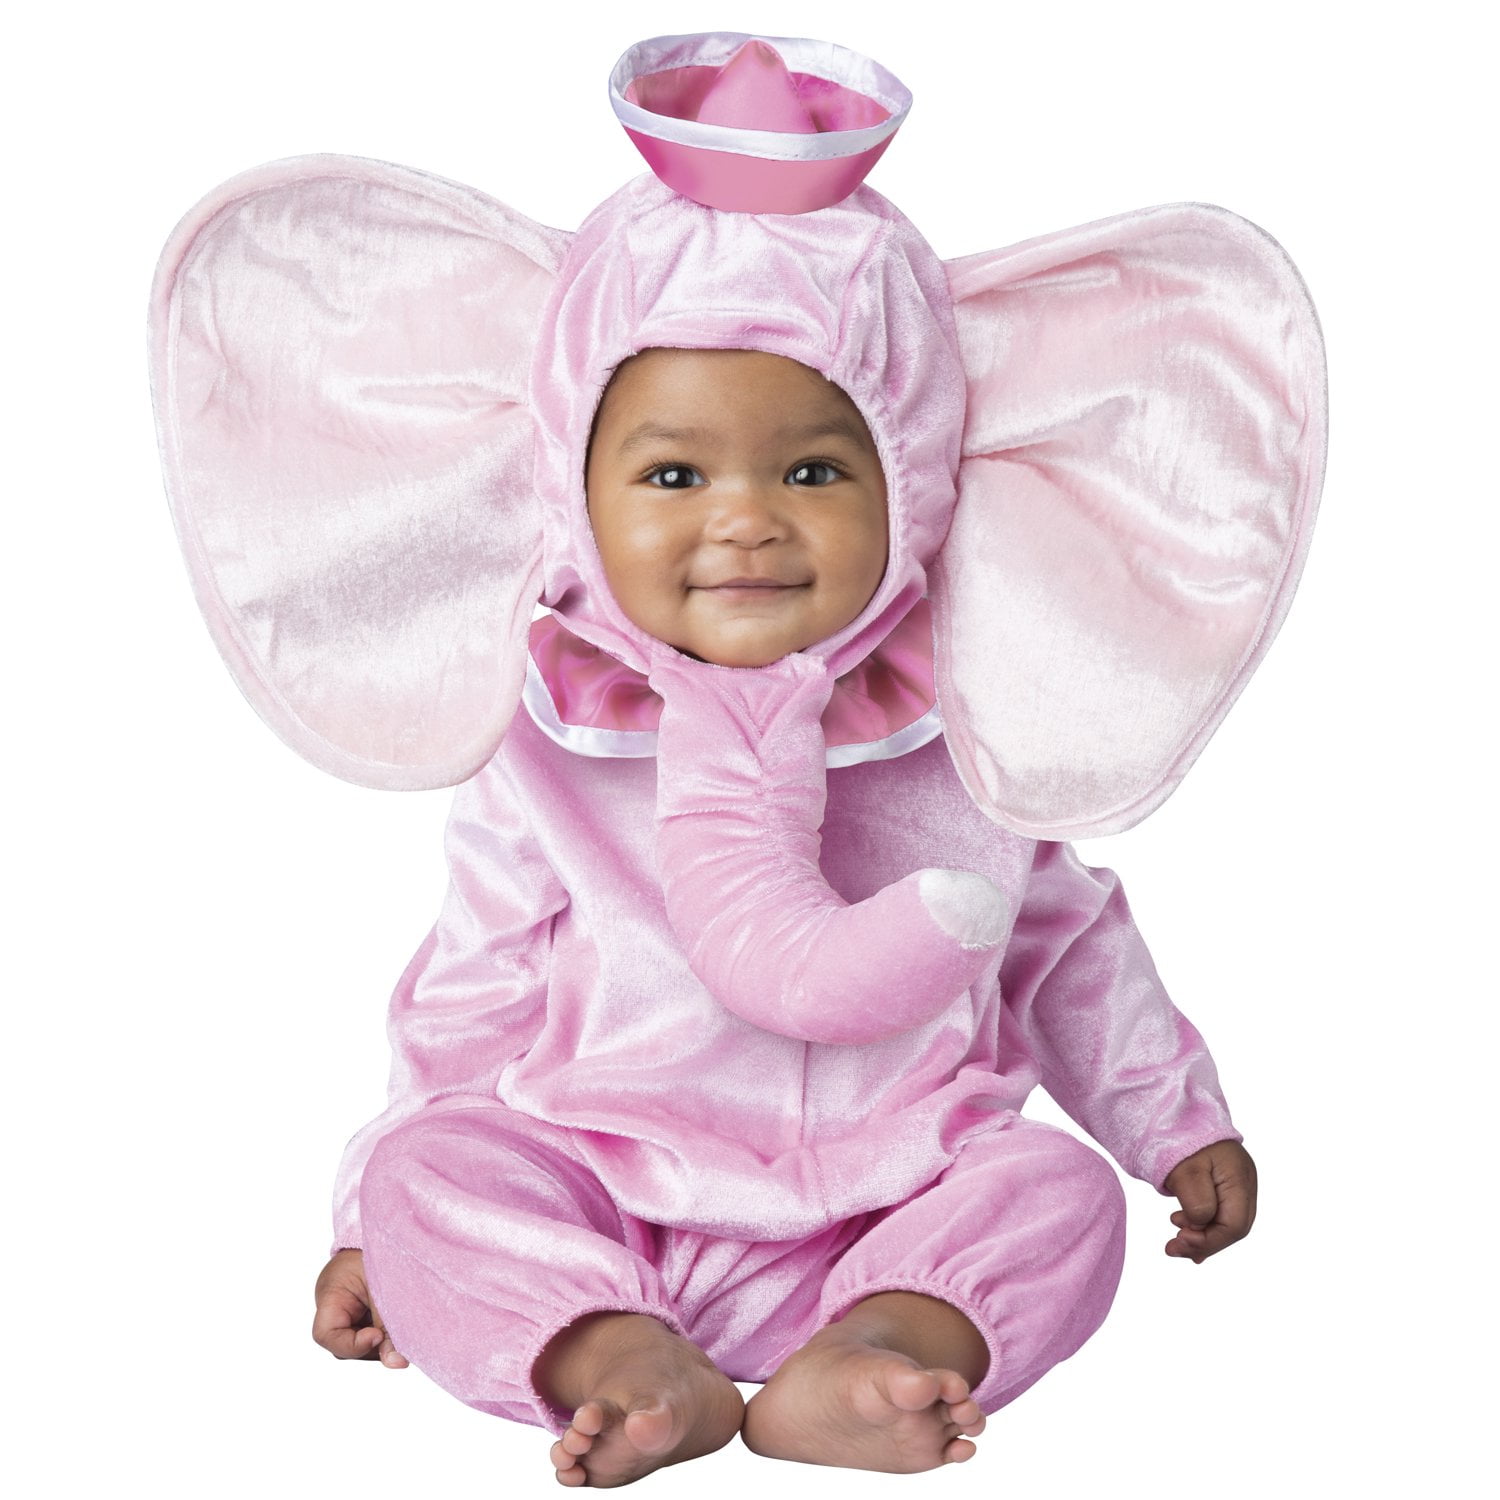 Baby Baby Clothing Baby Elephant Halloween Costume - Walmart.com